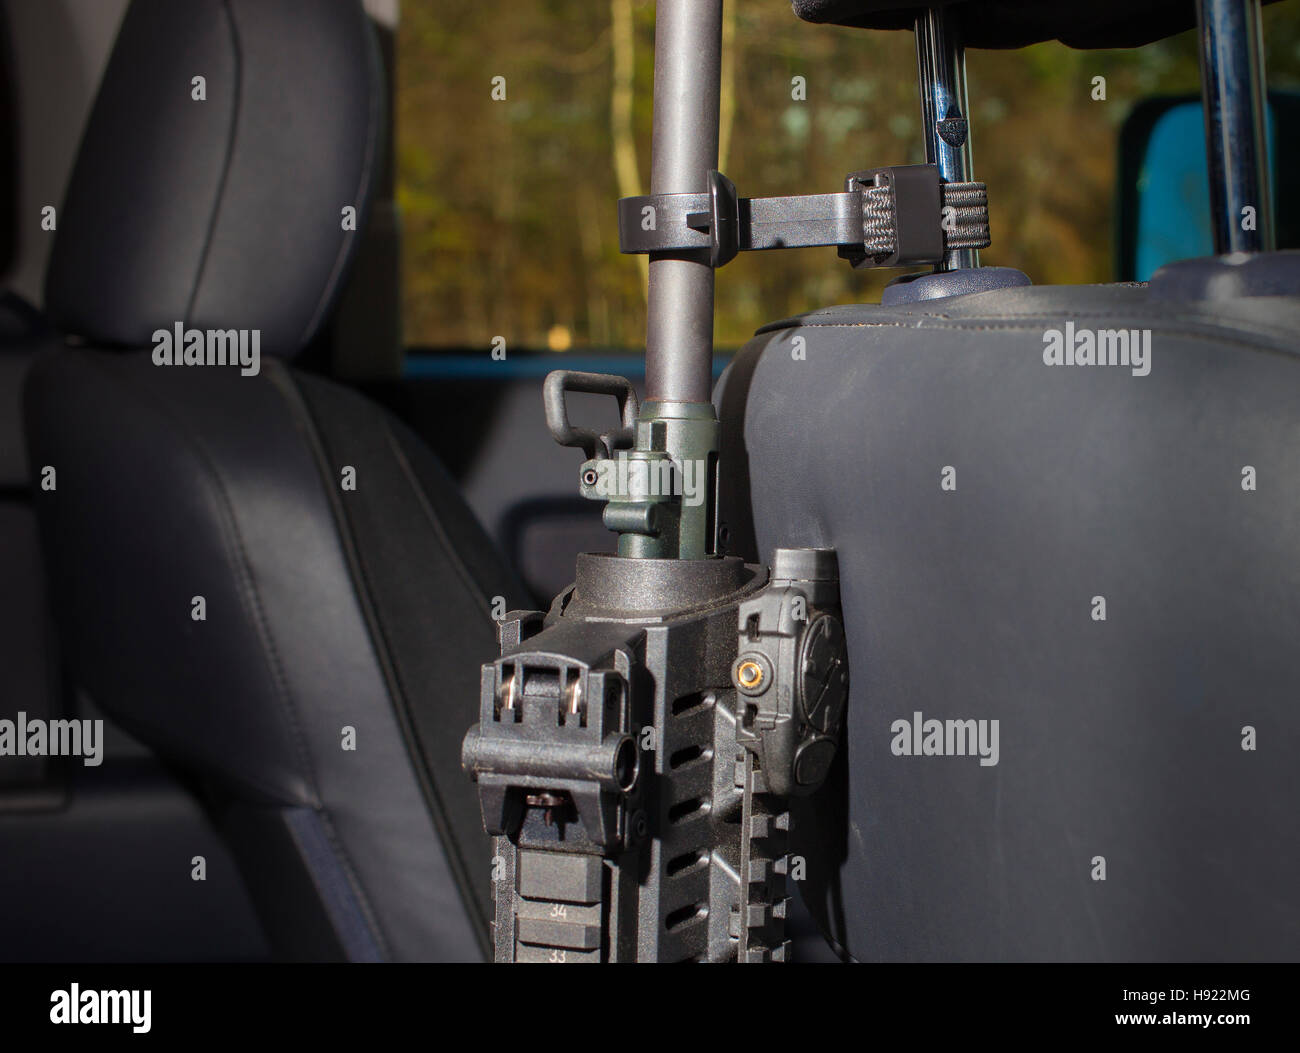 Polímero y sistema elástico diseñado para sostener un rifle en un vehículo Foto de stock